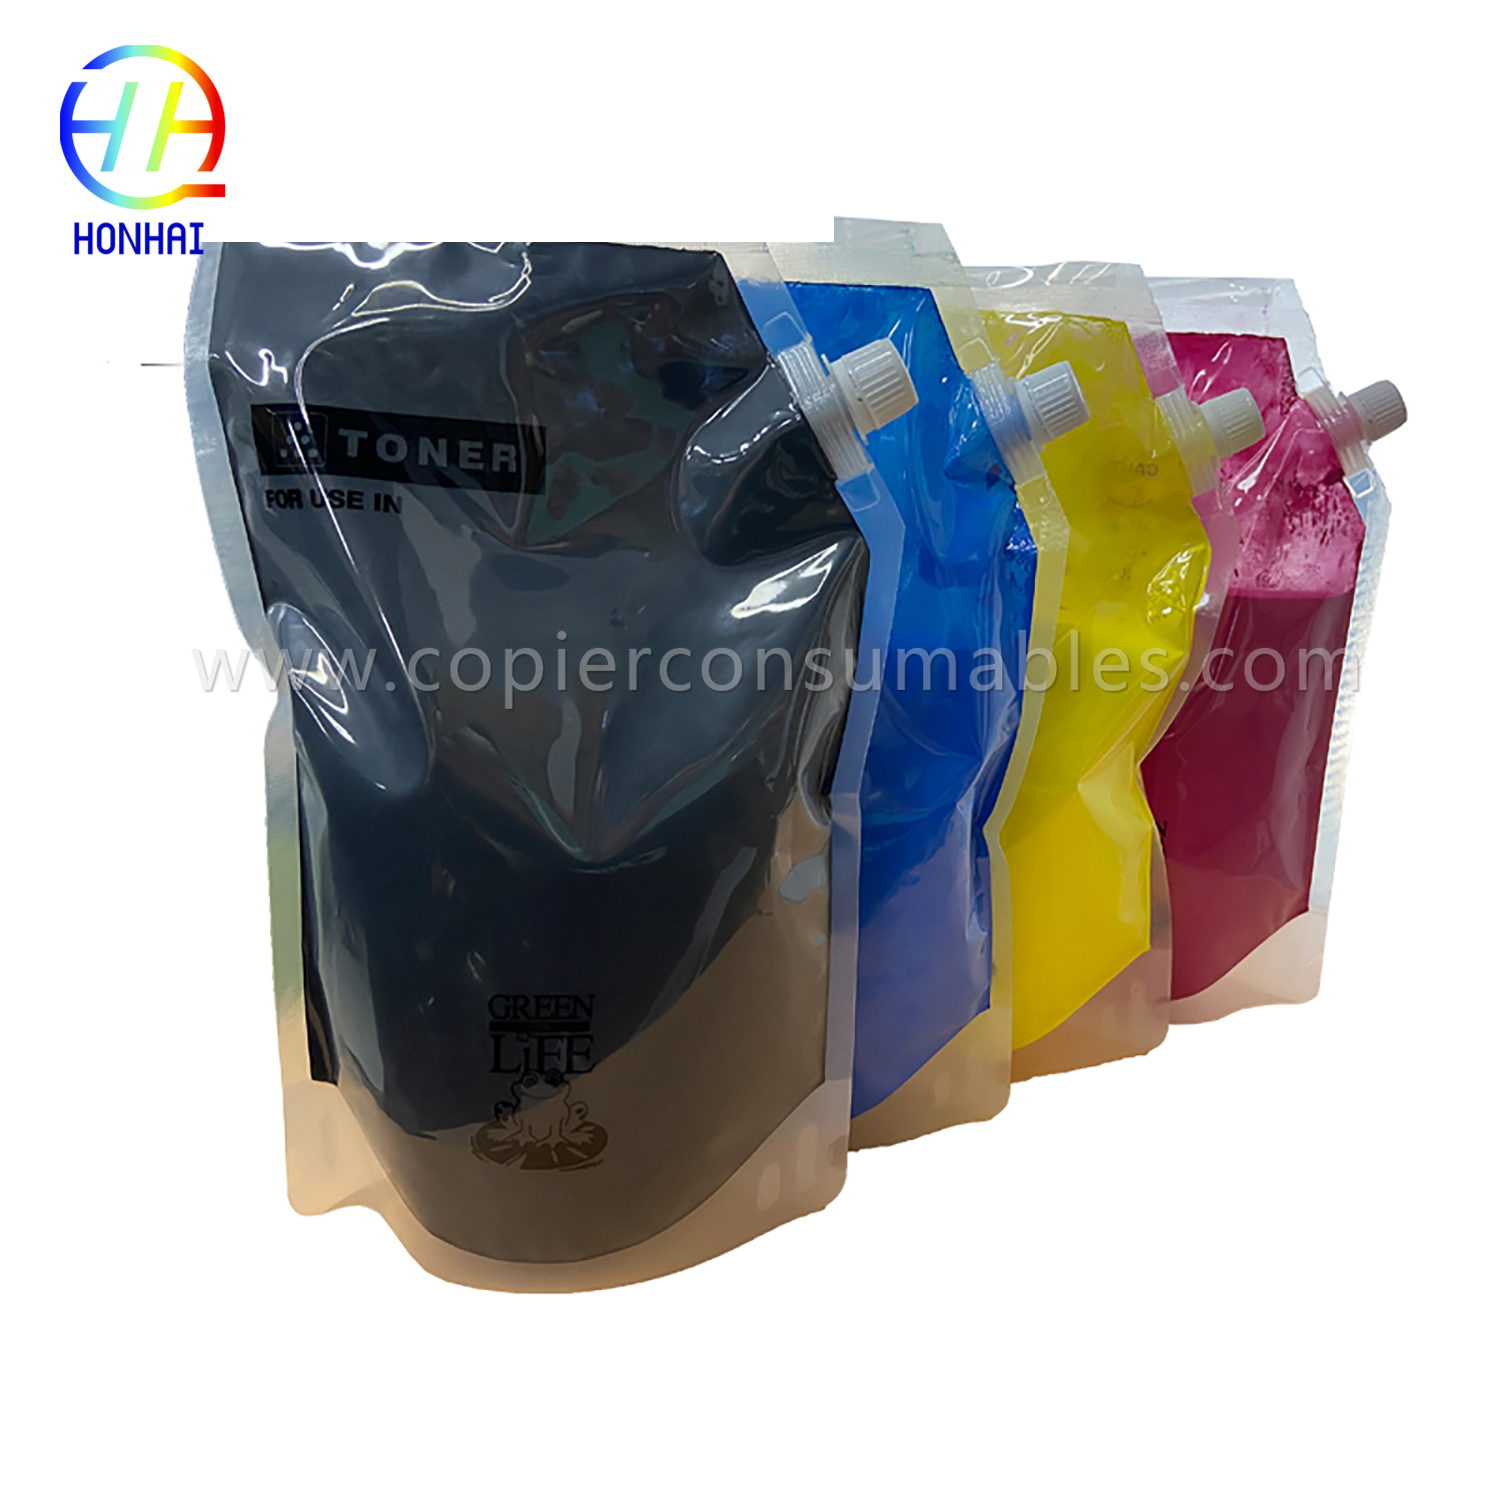 Toner Powder for Ricoh MP C2003 C3003 C3004 C3502 (841918 841919 841920 841921)